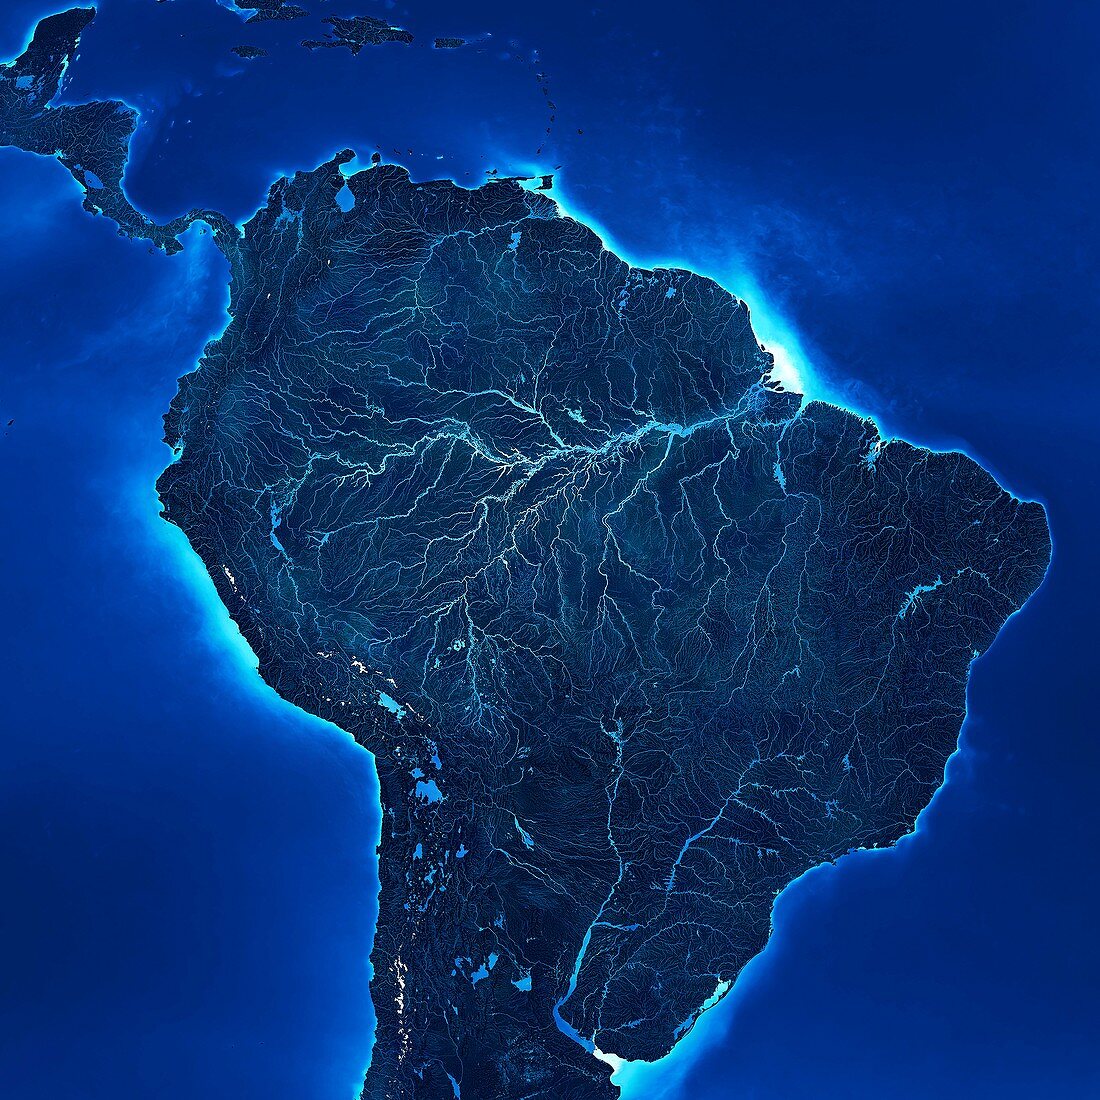 Amazon Basin hydrosphere